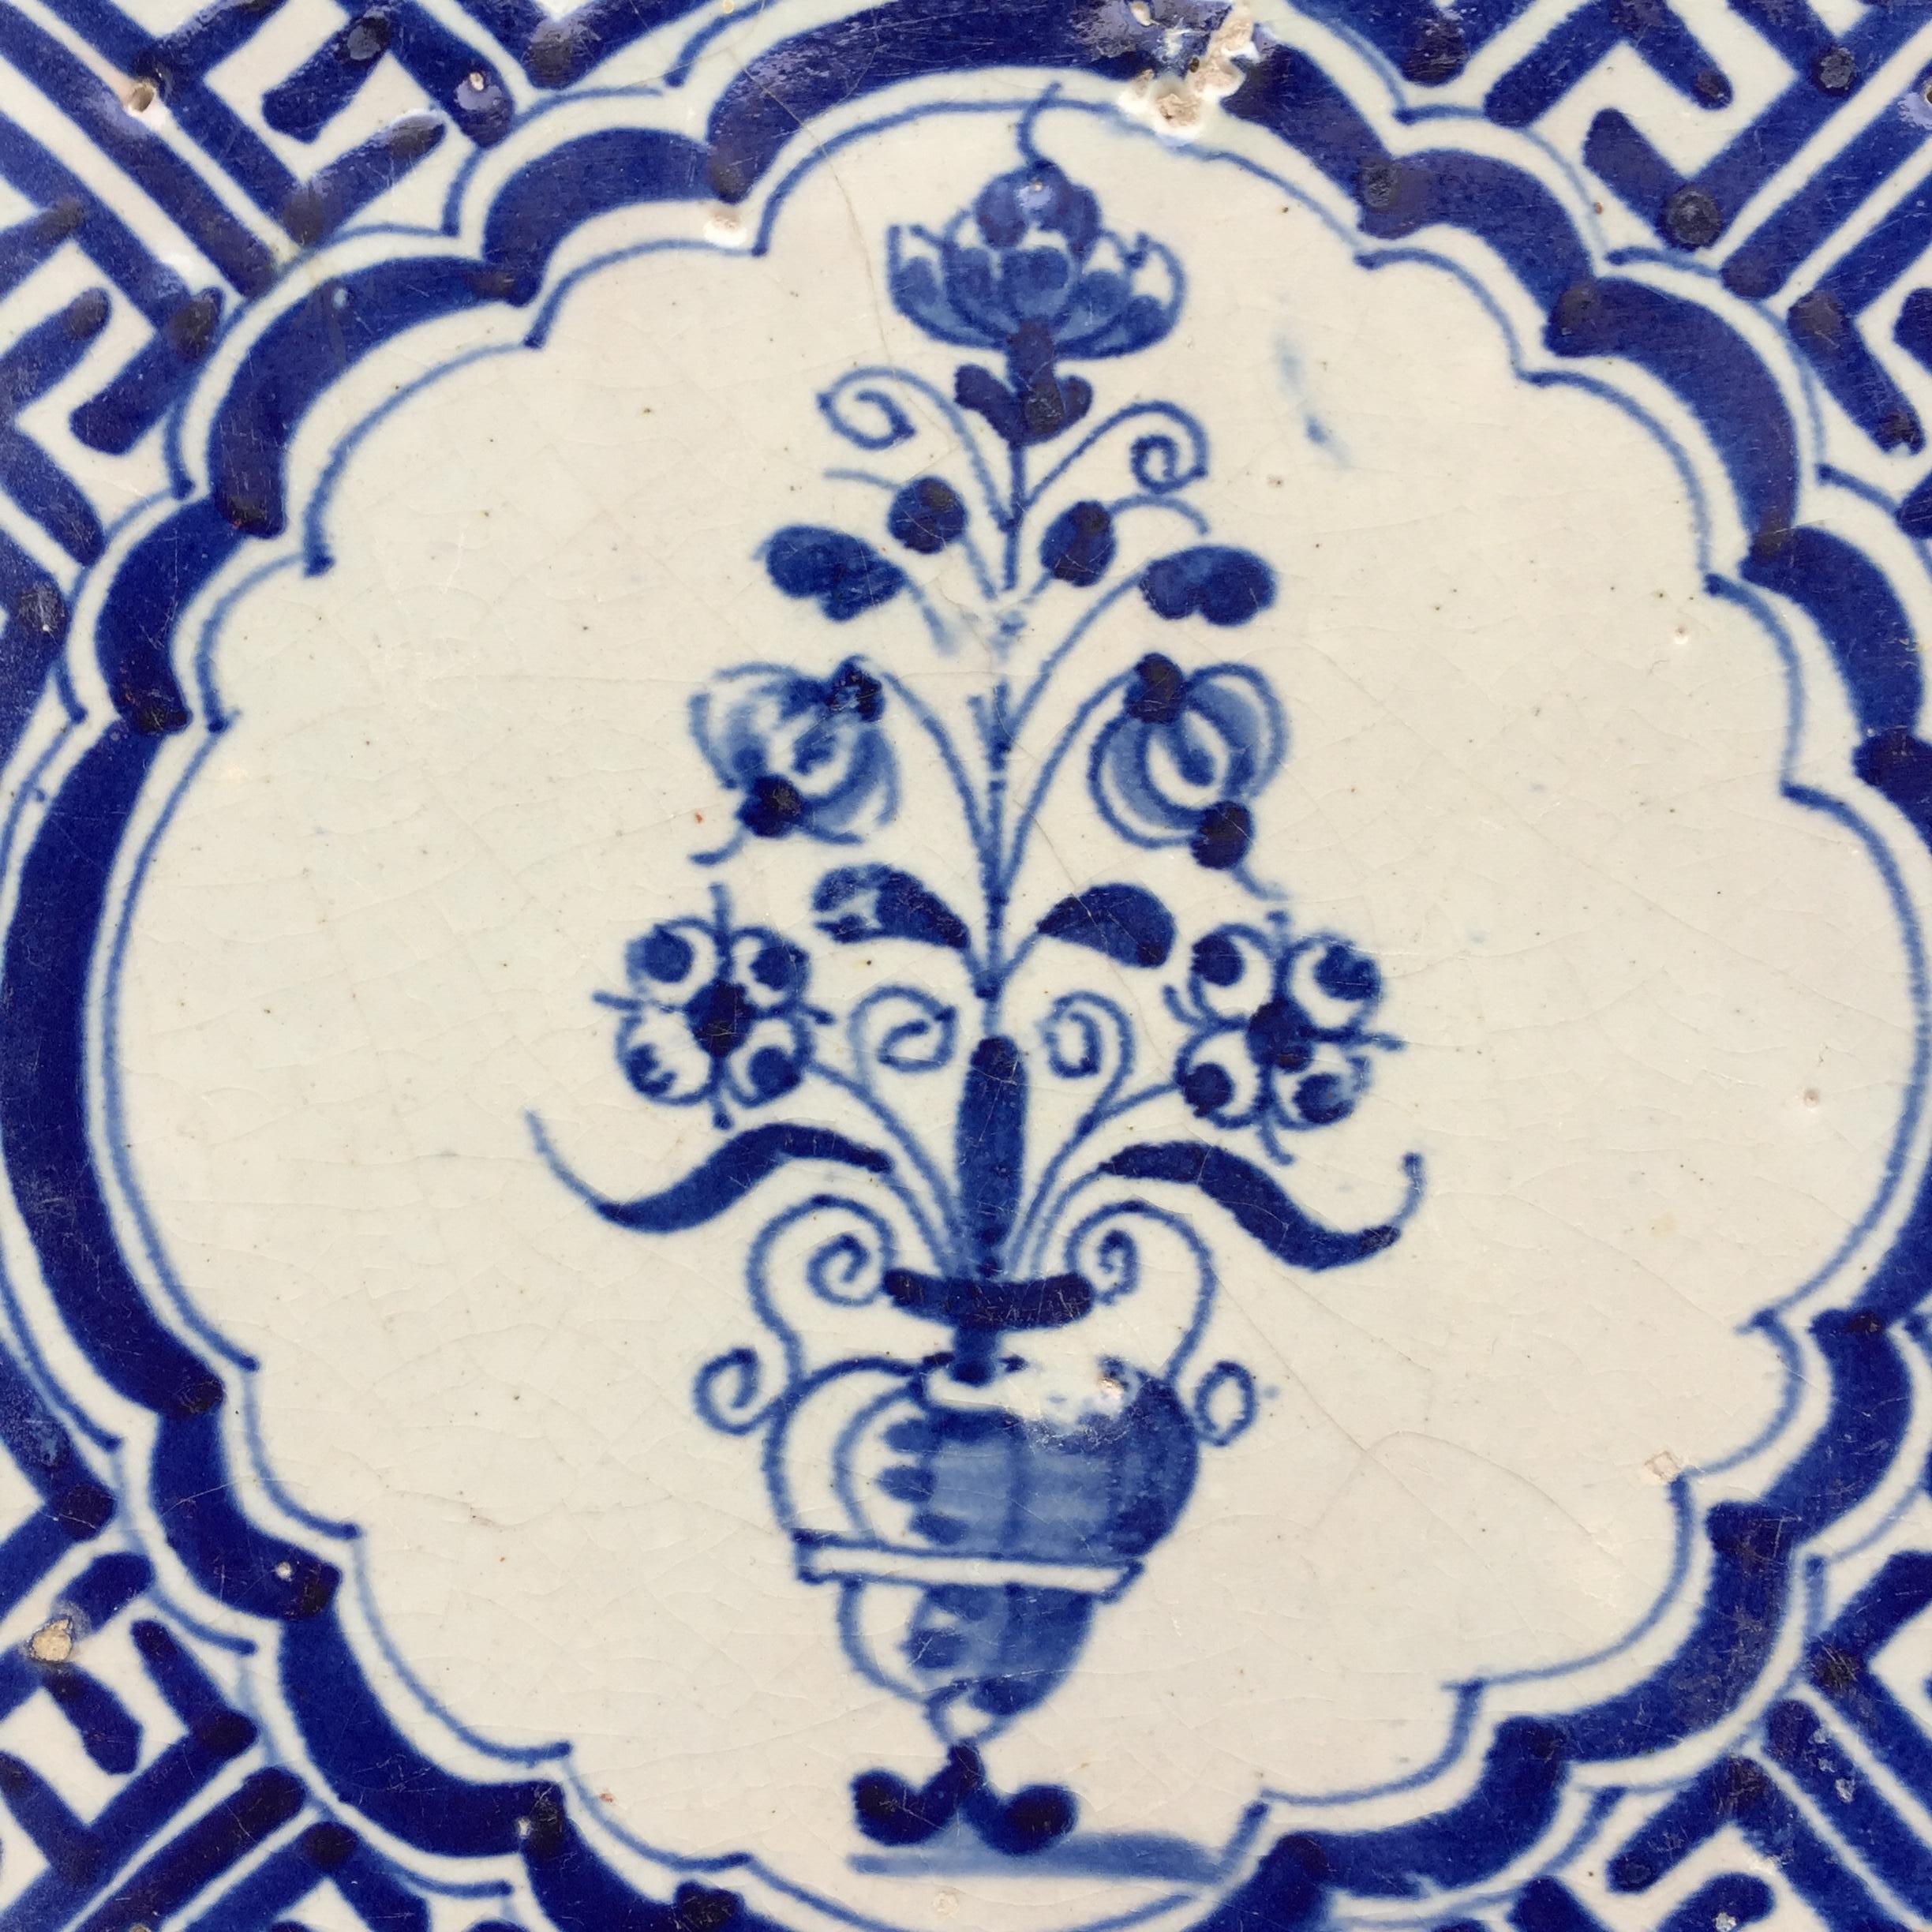 Les Pays-Bas
Vers 1620 - 1640

Un carreau hollandais bleu et blanc à la décoration d'un vase avec des fleurs.
La scène est peinte à l'intérieur d'un cartouche avec un motif d'angle Wanli, inspiré de la porcelaine chinoise de la période